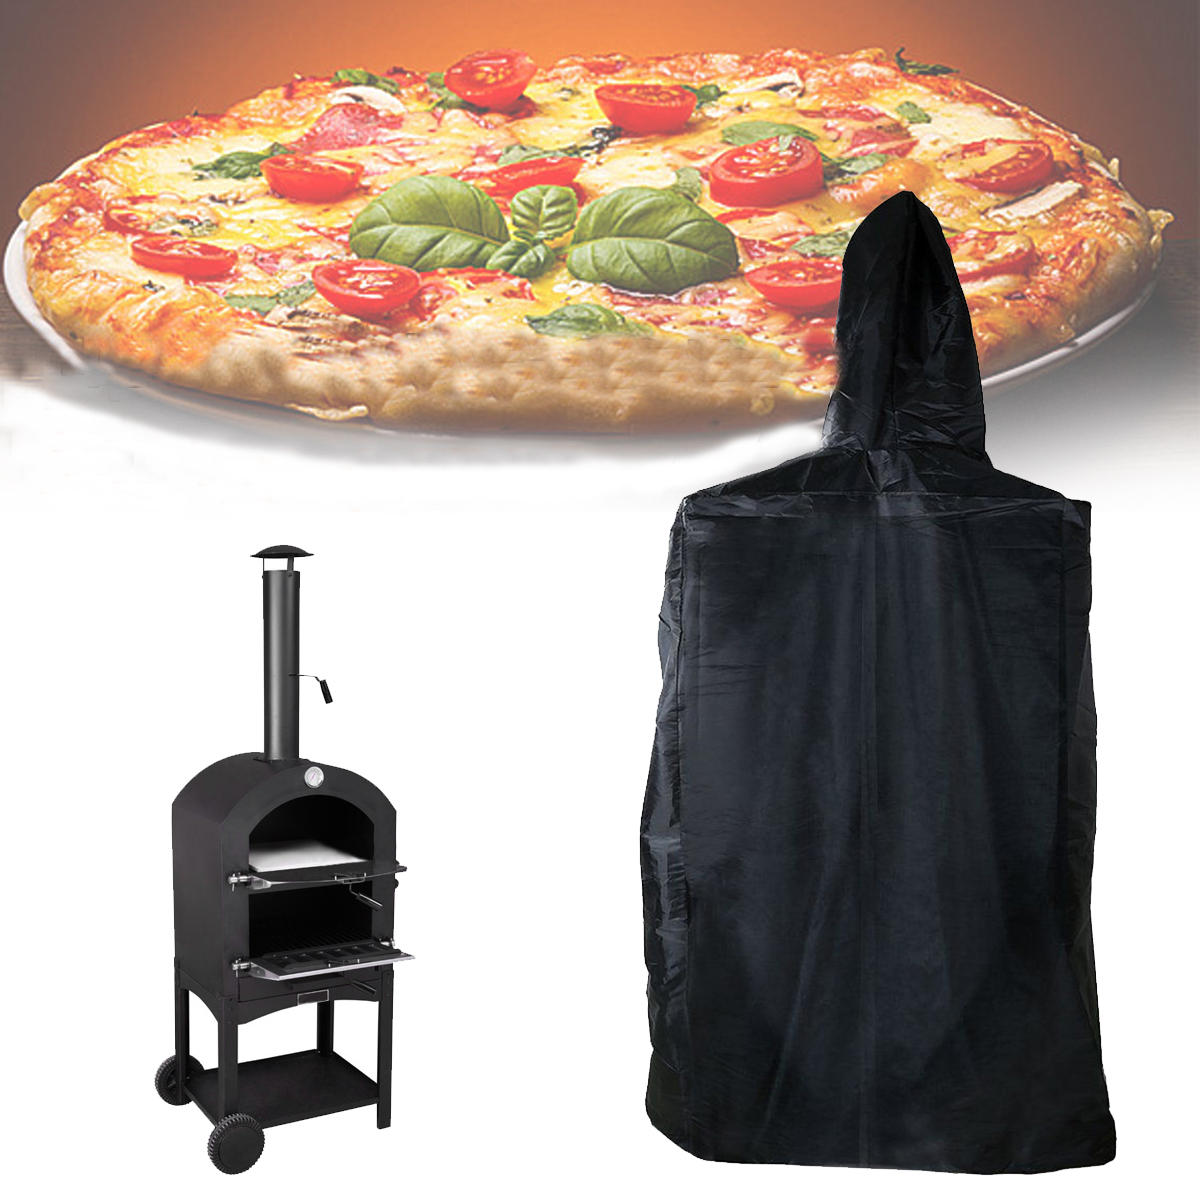 外部ピザオーブン用の160x37x50cmカバー、防水、防塵、UVプルーフプロテクター。